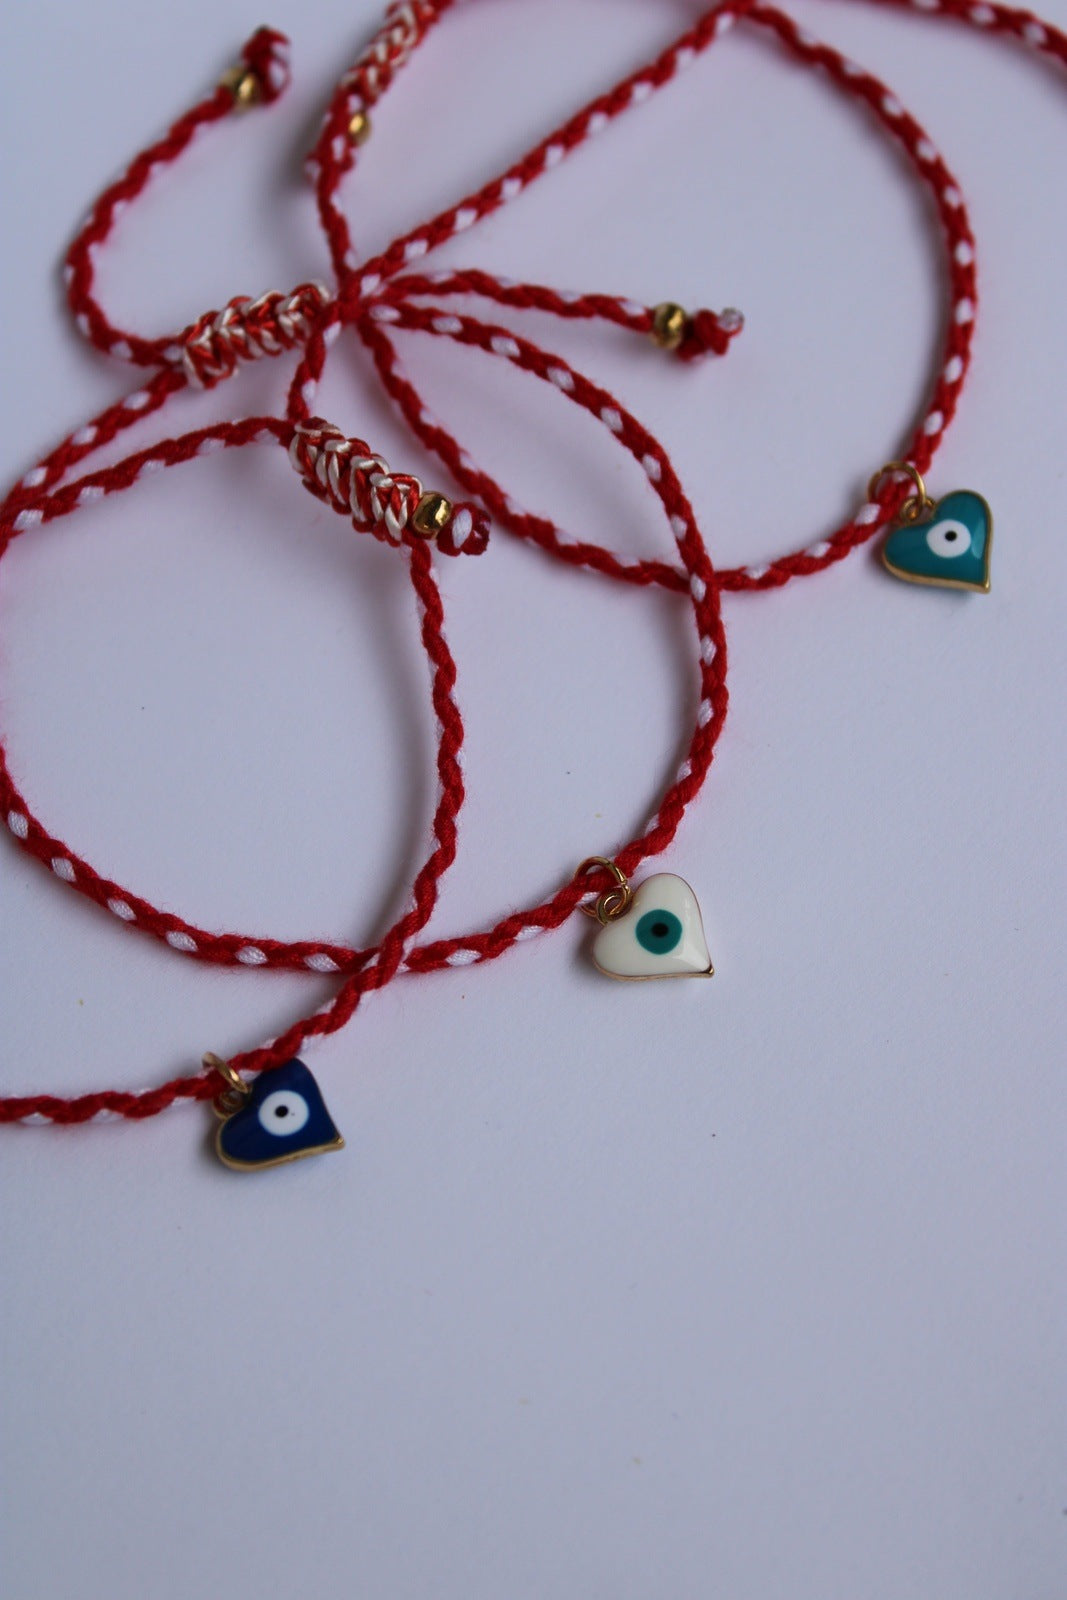 Bracelet martaki décoré de perles en forme d'oeil, dans les tons bleus et rouge, fait main par nos artisans.En Grèce, le 1er mars on porte ce bracelet, fait de corde rouge et blanche ou de fils torsadés ou tricotés. Souvent appelé « mati » ou « mataki», l'œil grec n'est pas que décoratif.Il est là pour protéger et empêcher les effets du mauvais œil (mauvaise énergie).Retrouvez aussi les autres pièces de la collection mati porte-bonheur grec.